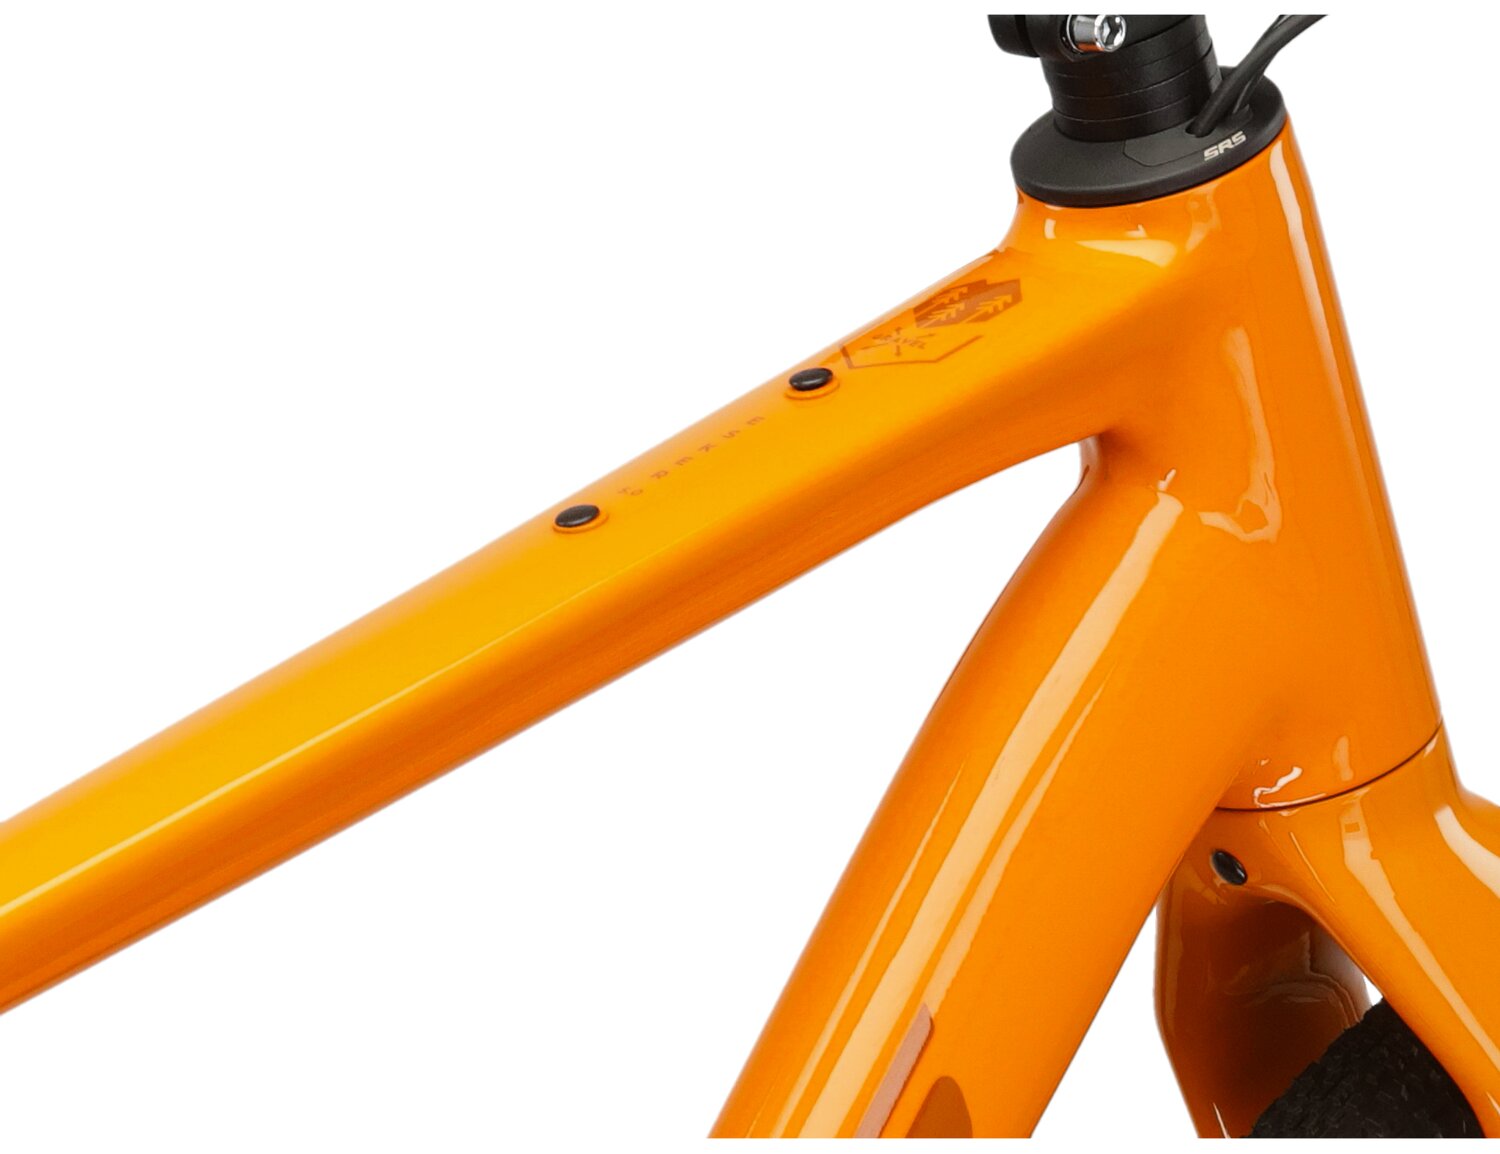  Aluminiowa rama w kolorze pomarańczowym roweru gravelowego Esker 5.0 